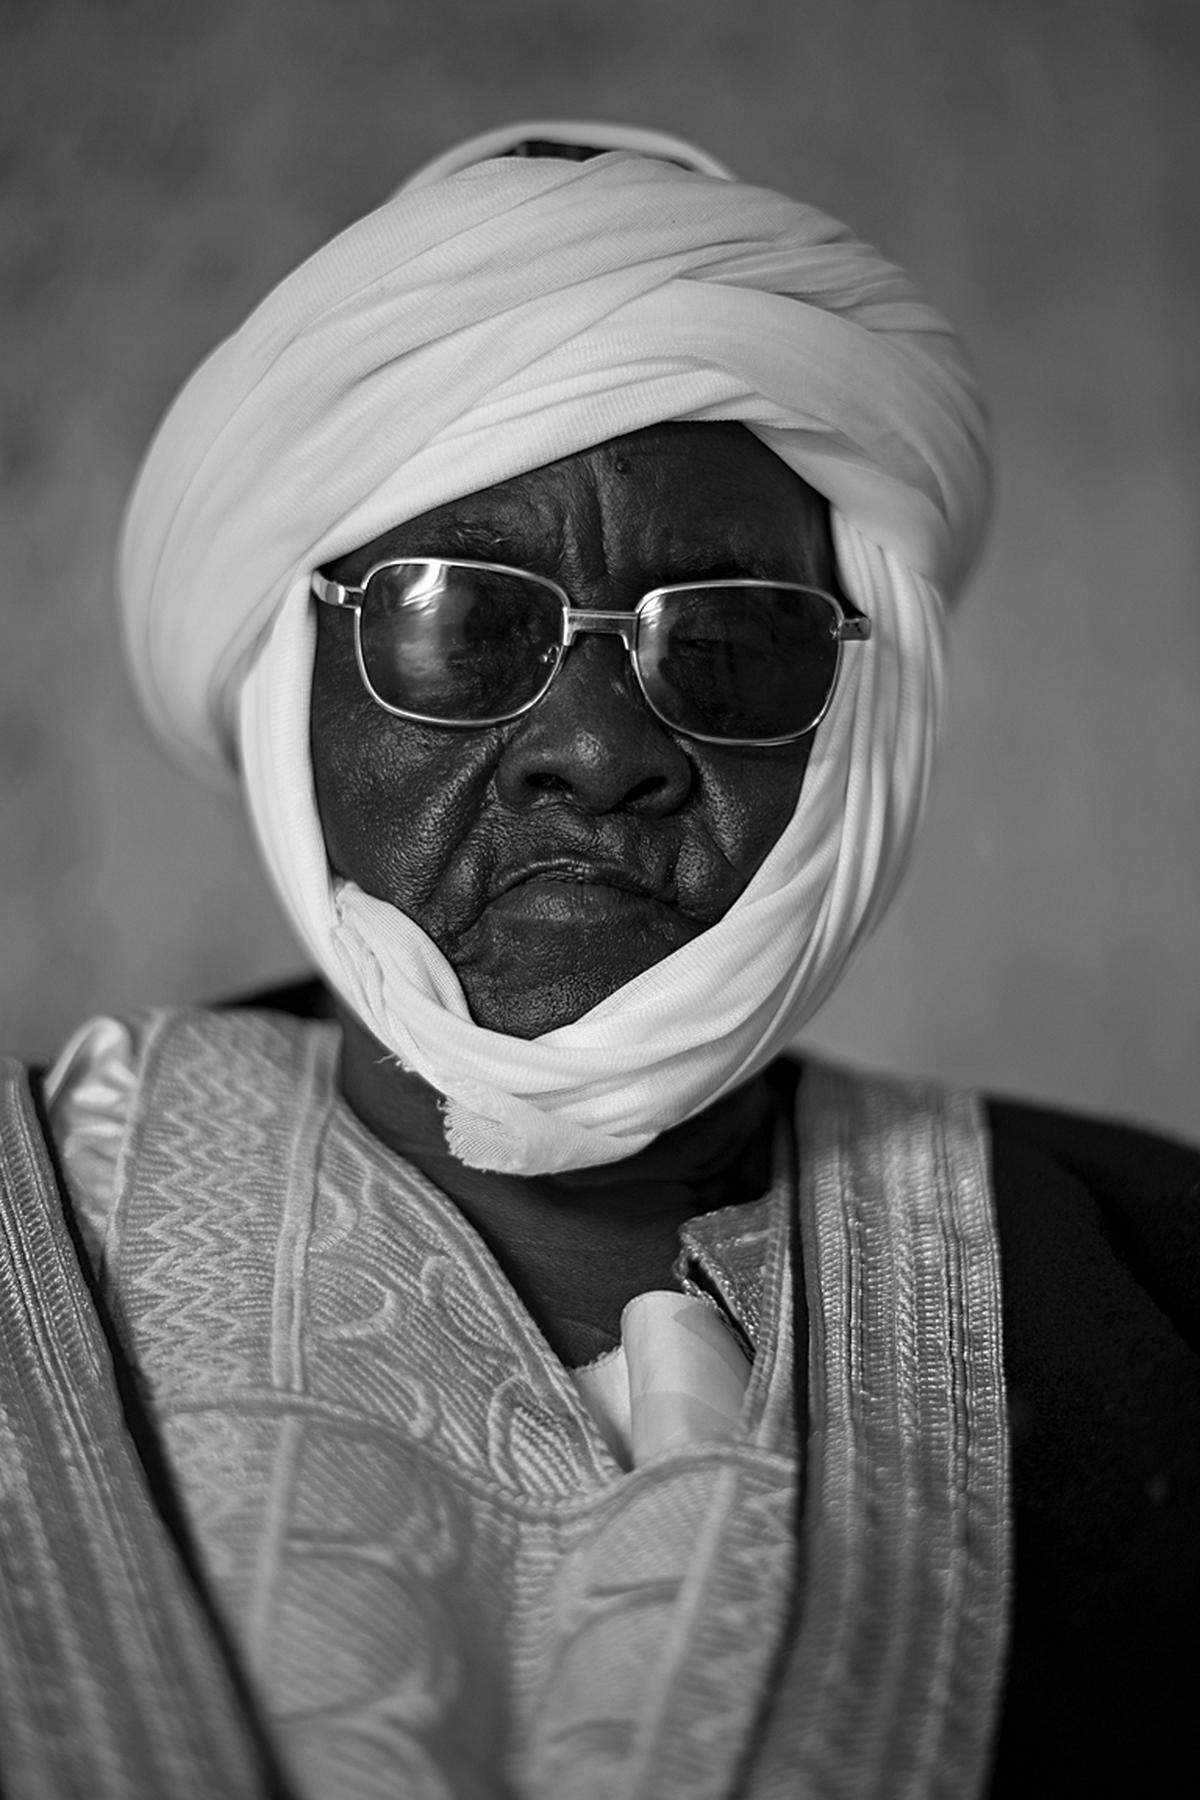 Bissagou Mamadou, Lamido of Mokong, Kamerun (c) Alfred Weidinger Weidinger: "Der Lamido von Mokong posiert mit Sonnenbrille und zwei Notablen. Im Hintergrund fand sich während der Aufnahme seine gesamte Familie ein."